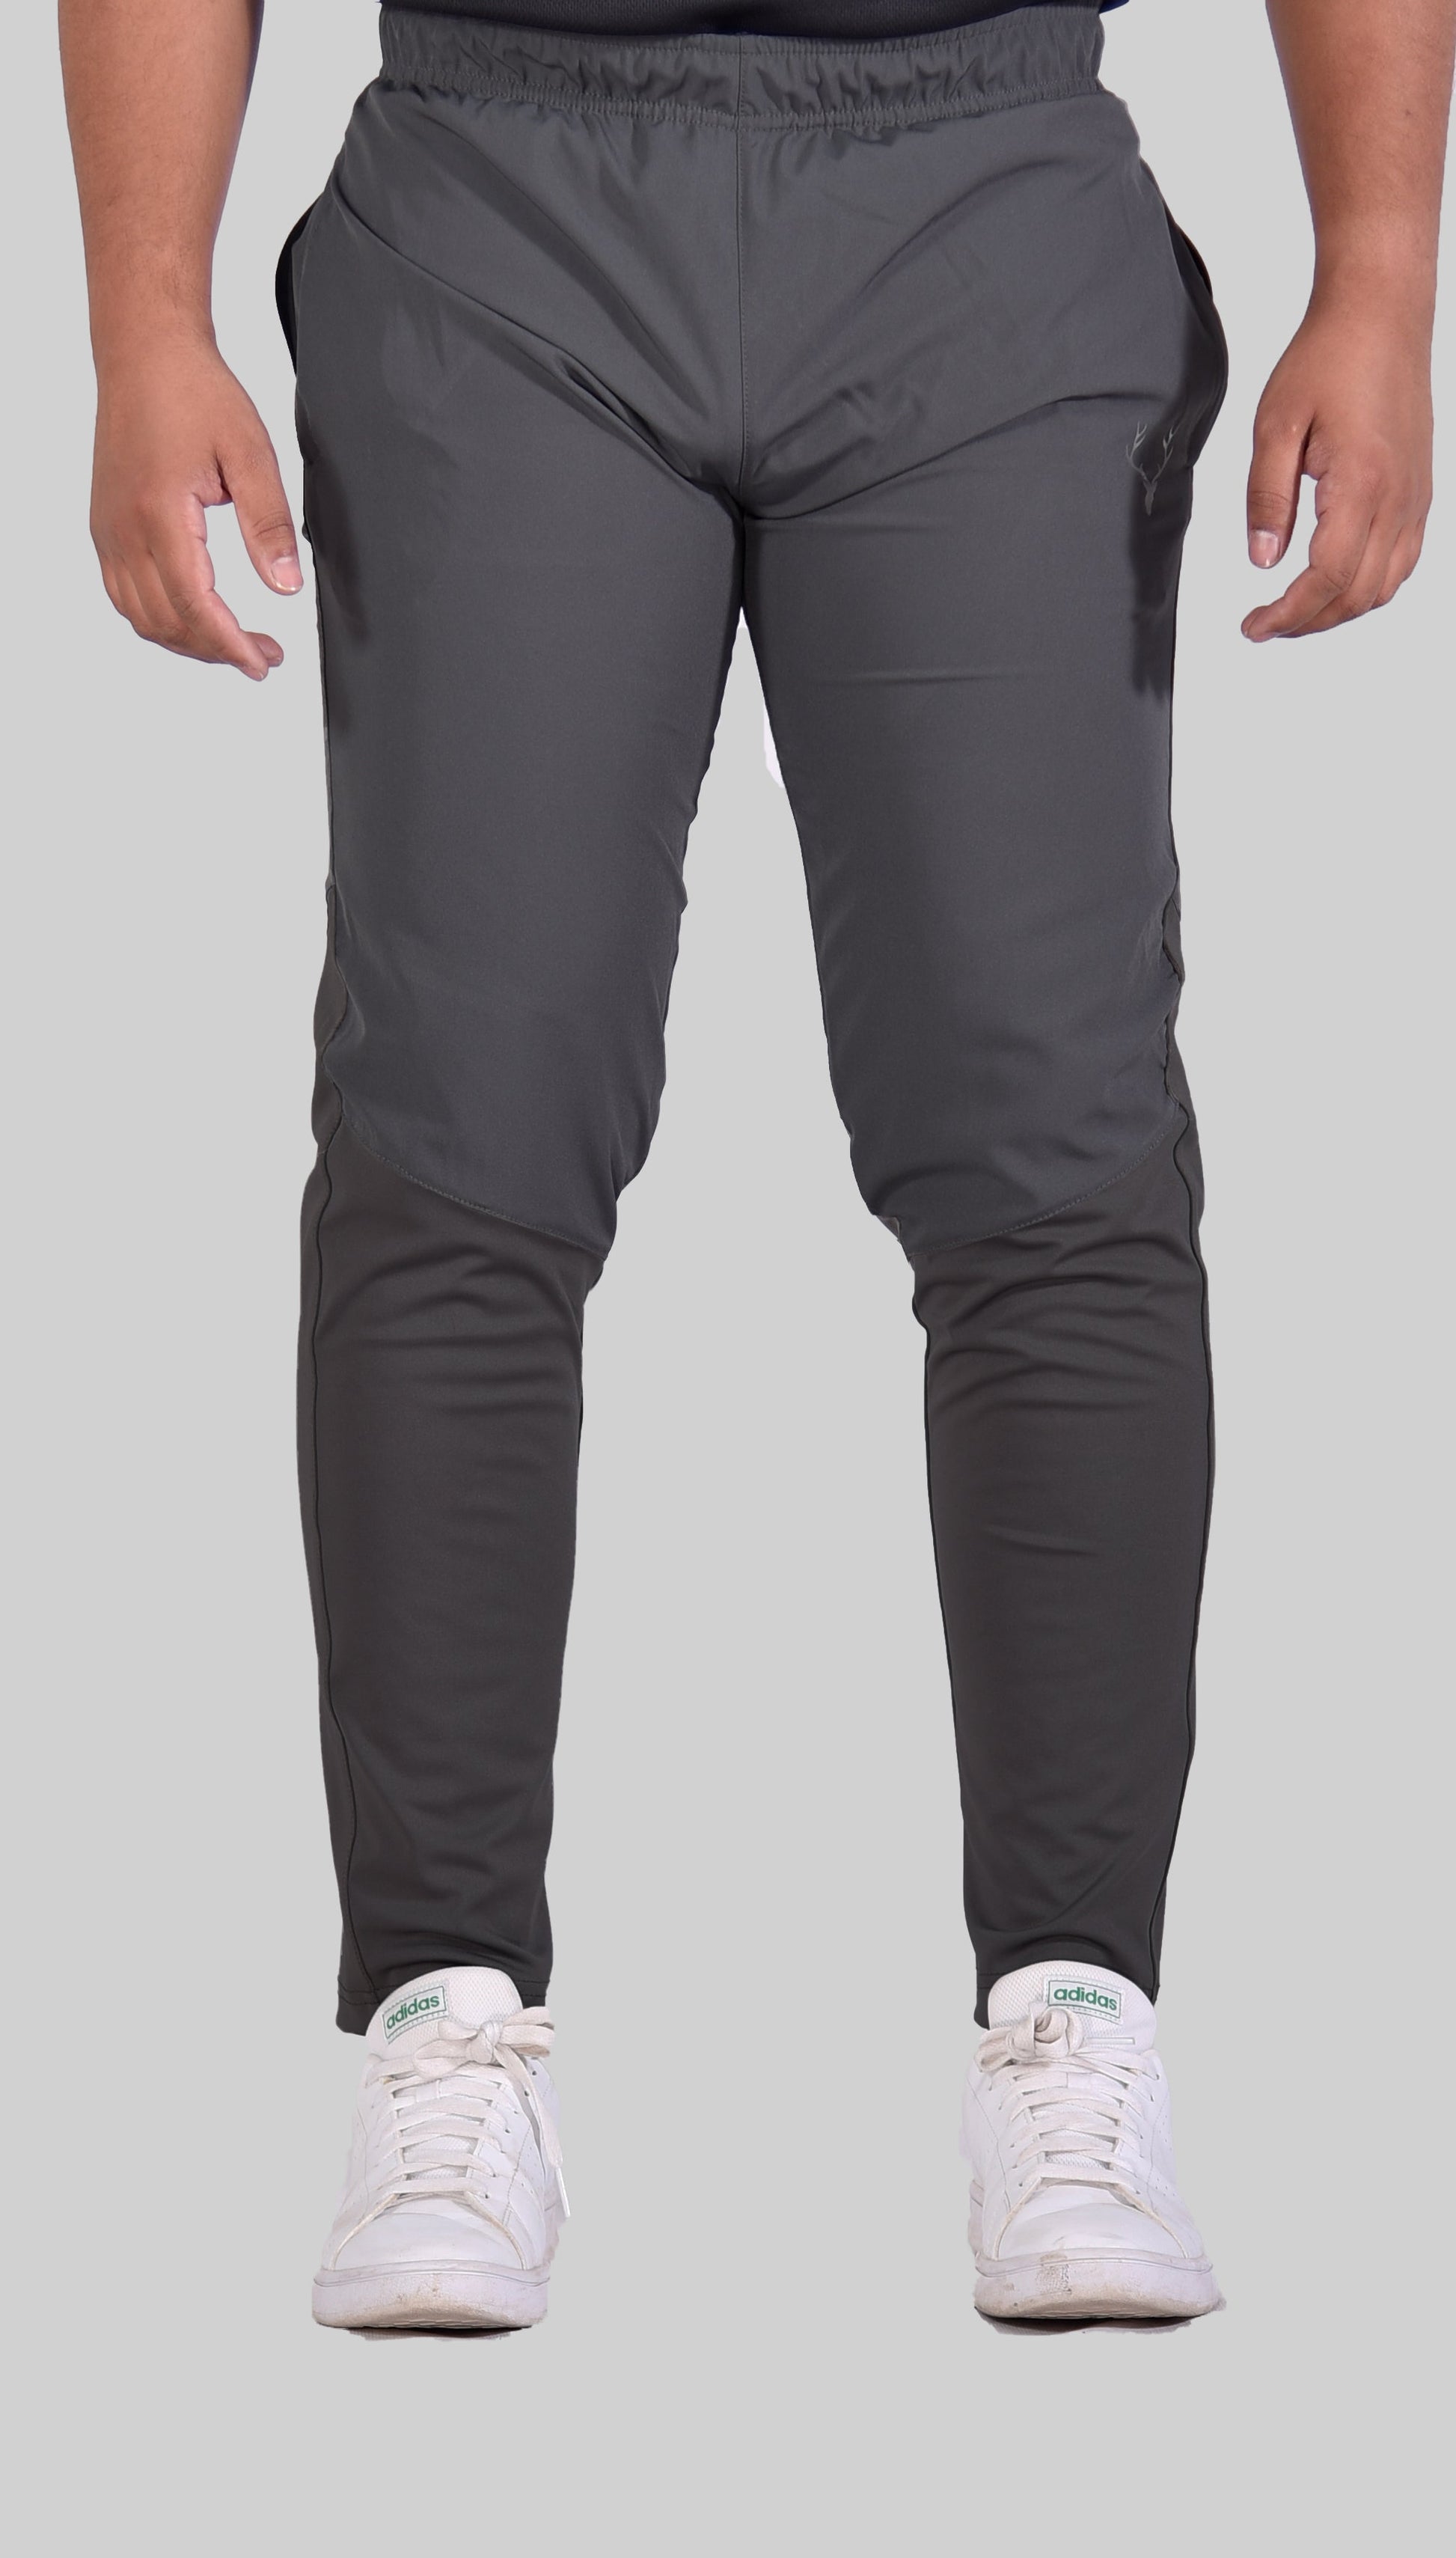 SG Hybrid Trouser 2.0 (Grey & Grey) - Stag Clothing 